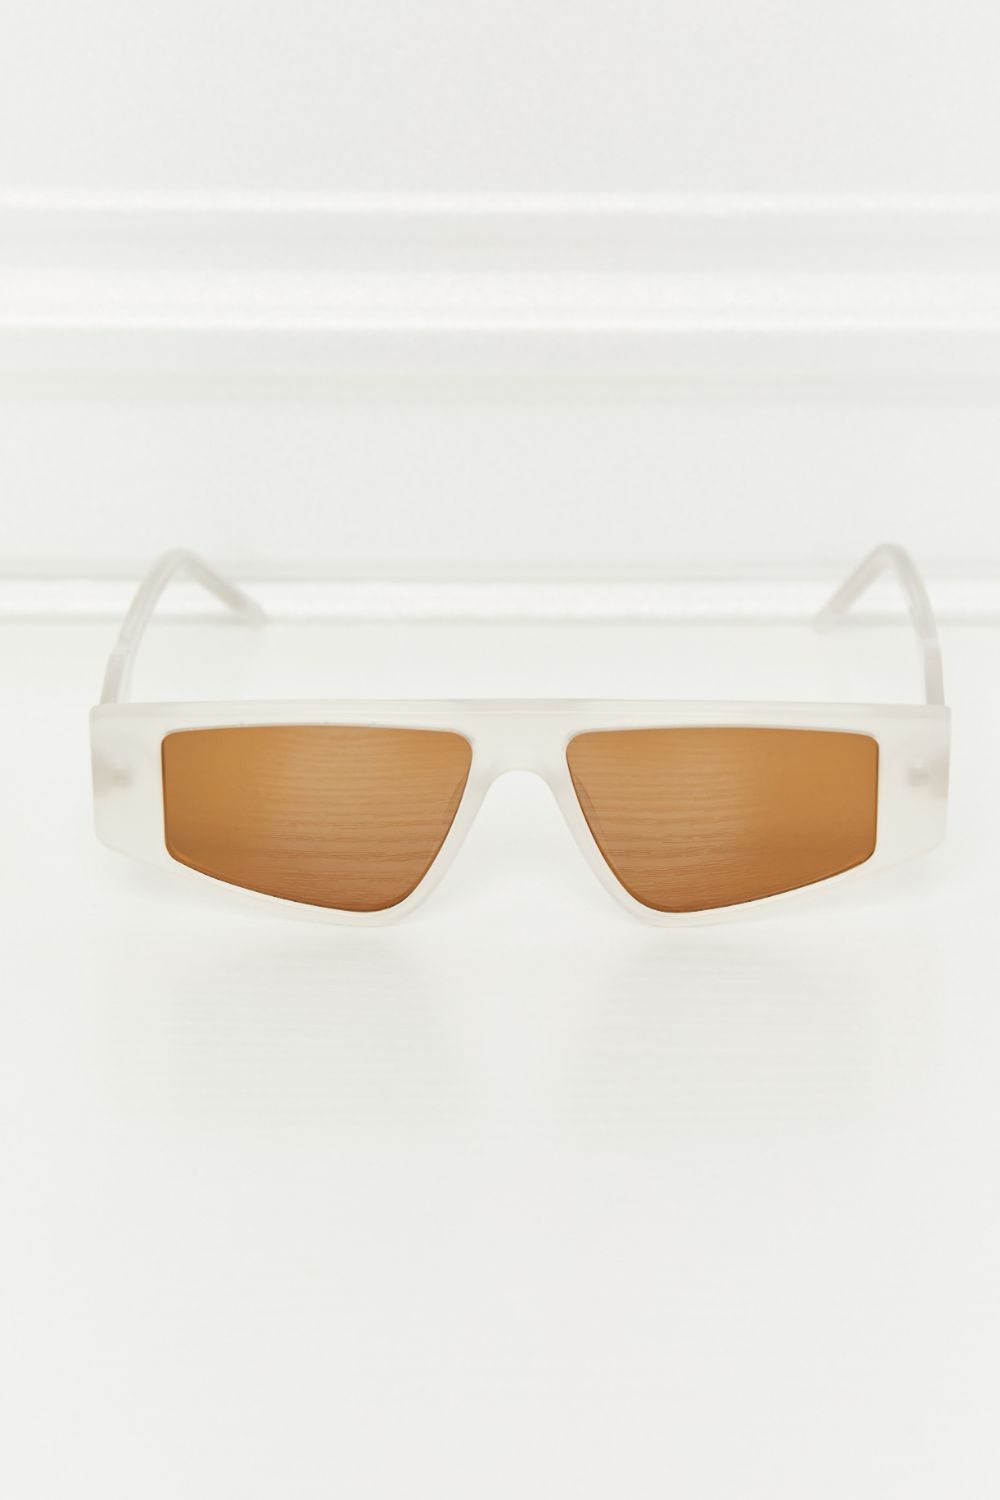 Geometric TAC Polarization Lens Sunglasses-Trendsi-Caramel-One Size-[option4]-[option5]-[option6]-[option7]-[option8]-Shop-Boutique-Clothing-for-Women-Online